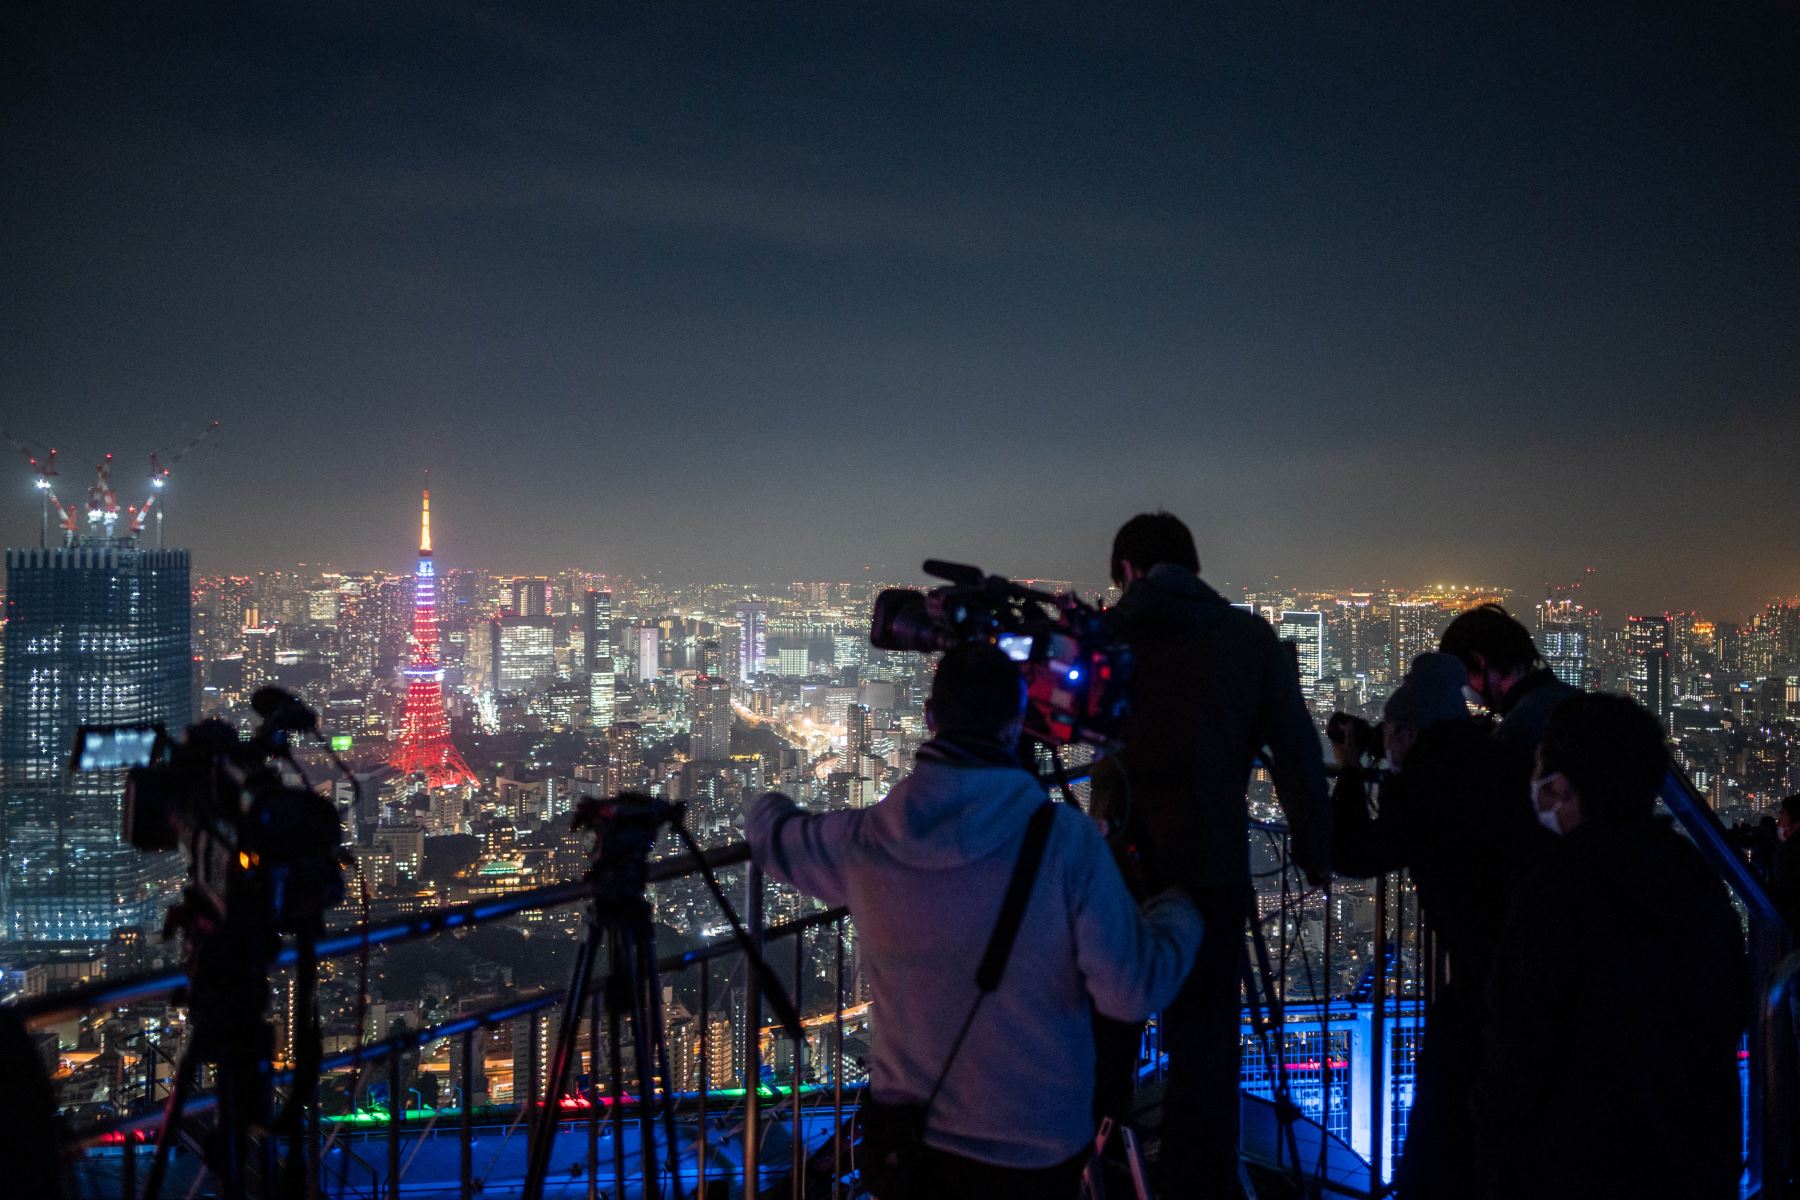 La gente observa el cielo nocturno con un telescopio mientras fotógrafos y videoperiodistas documentan un eclipse lunar desde la plataforma de observación de Roppongi Hills en Tokio. Foto: AFP